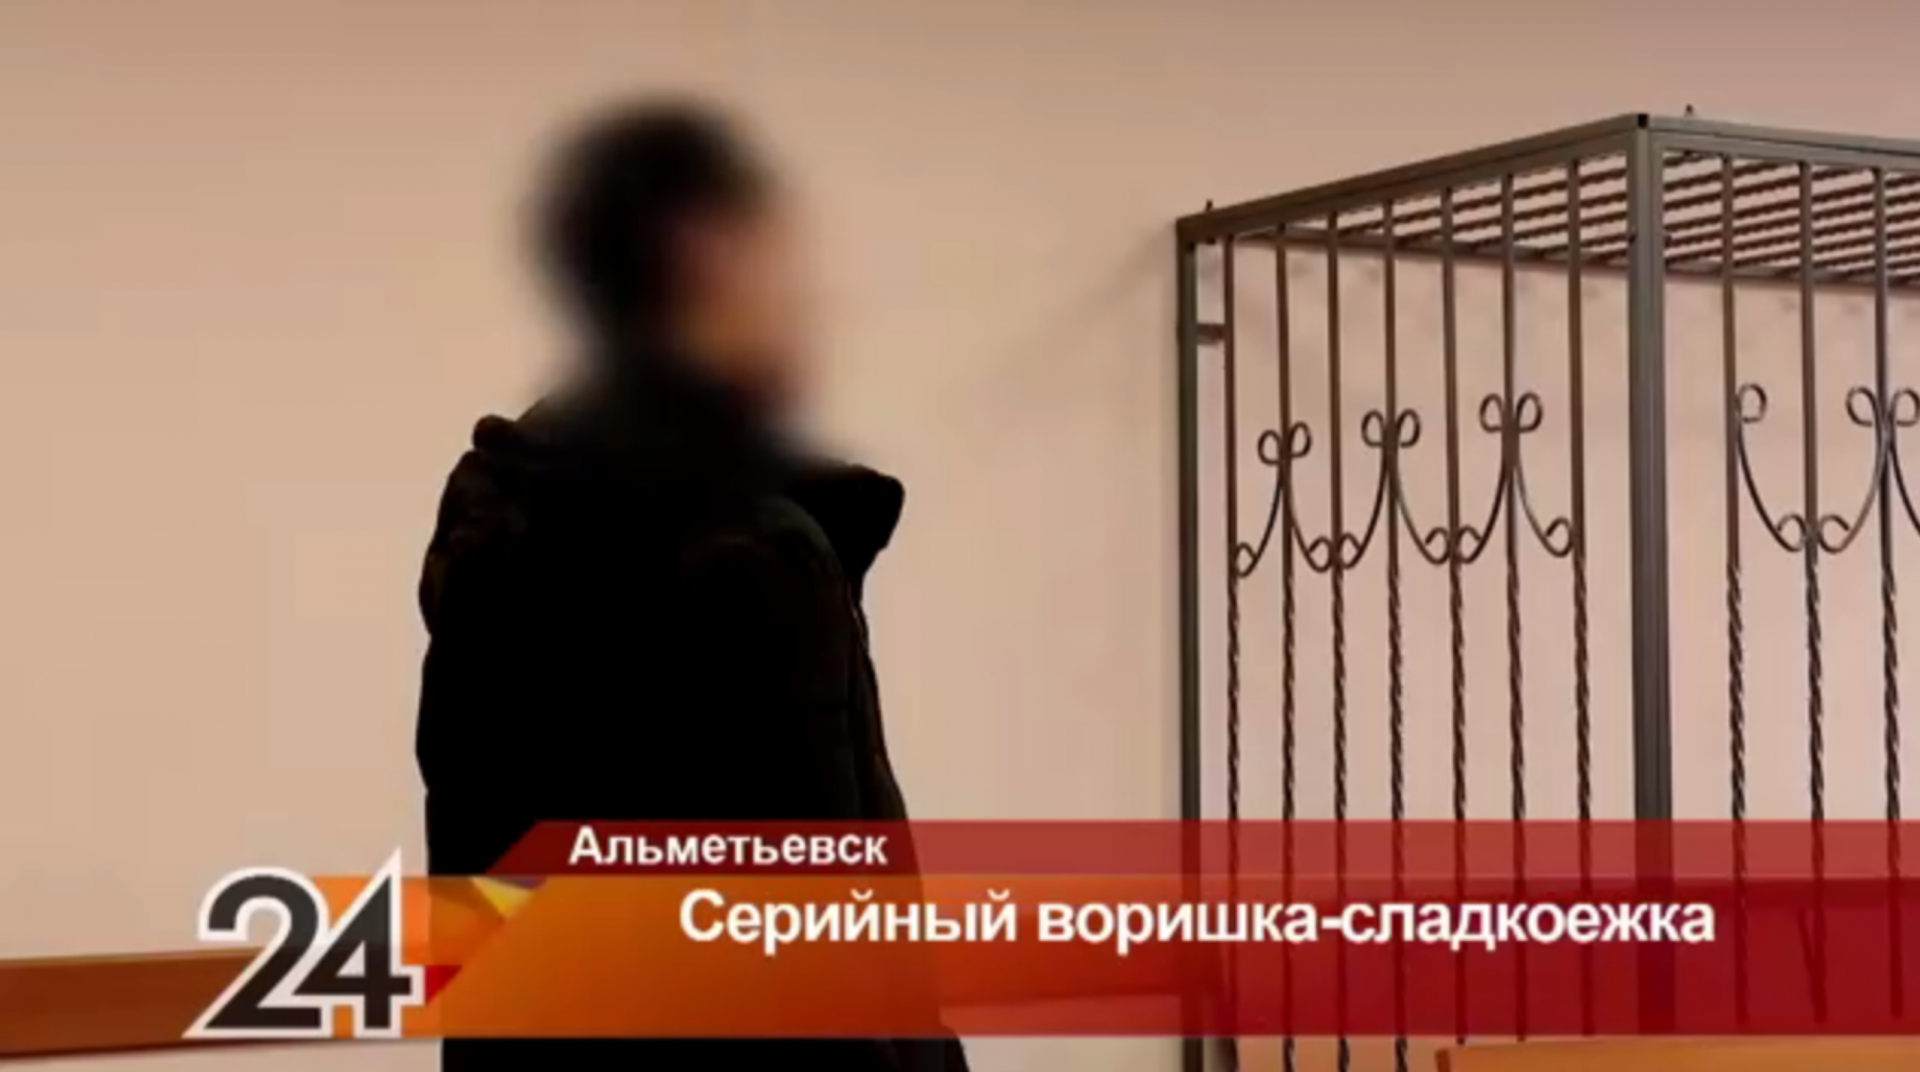 Воришка-сладкоежка: в Татарстане мужчину судят за серию магазинных краж